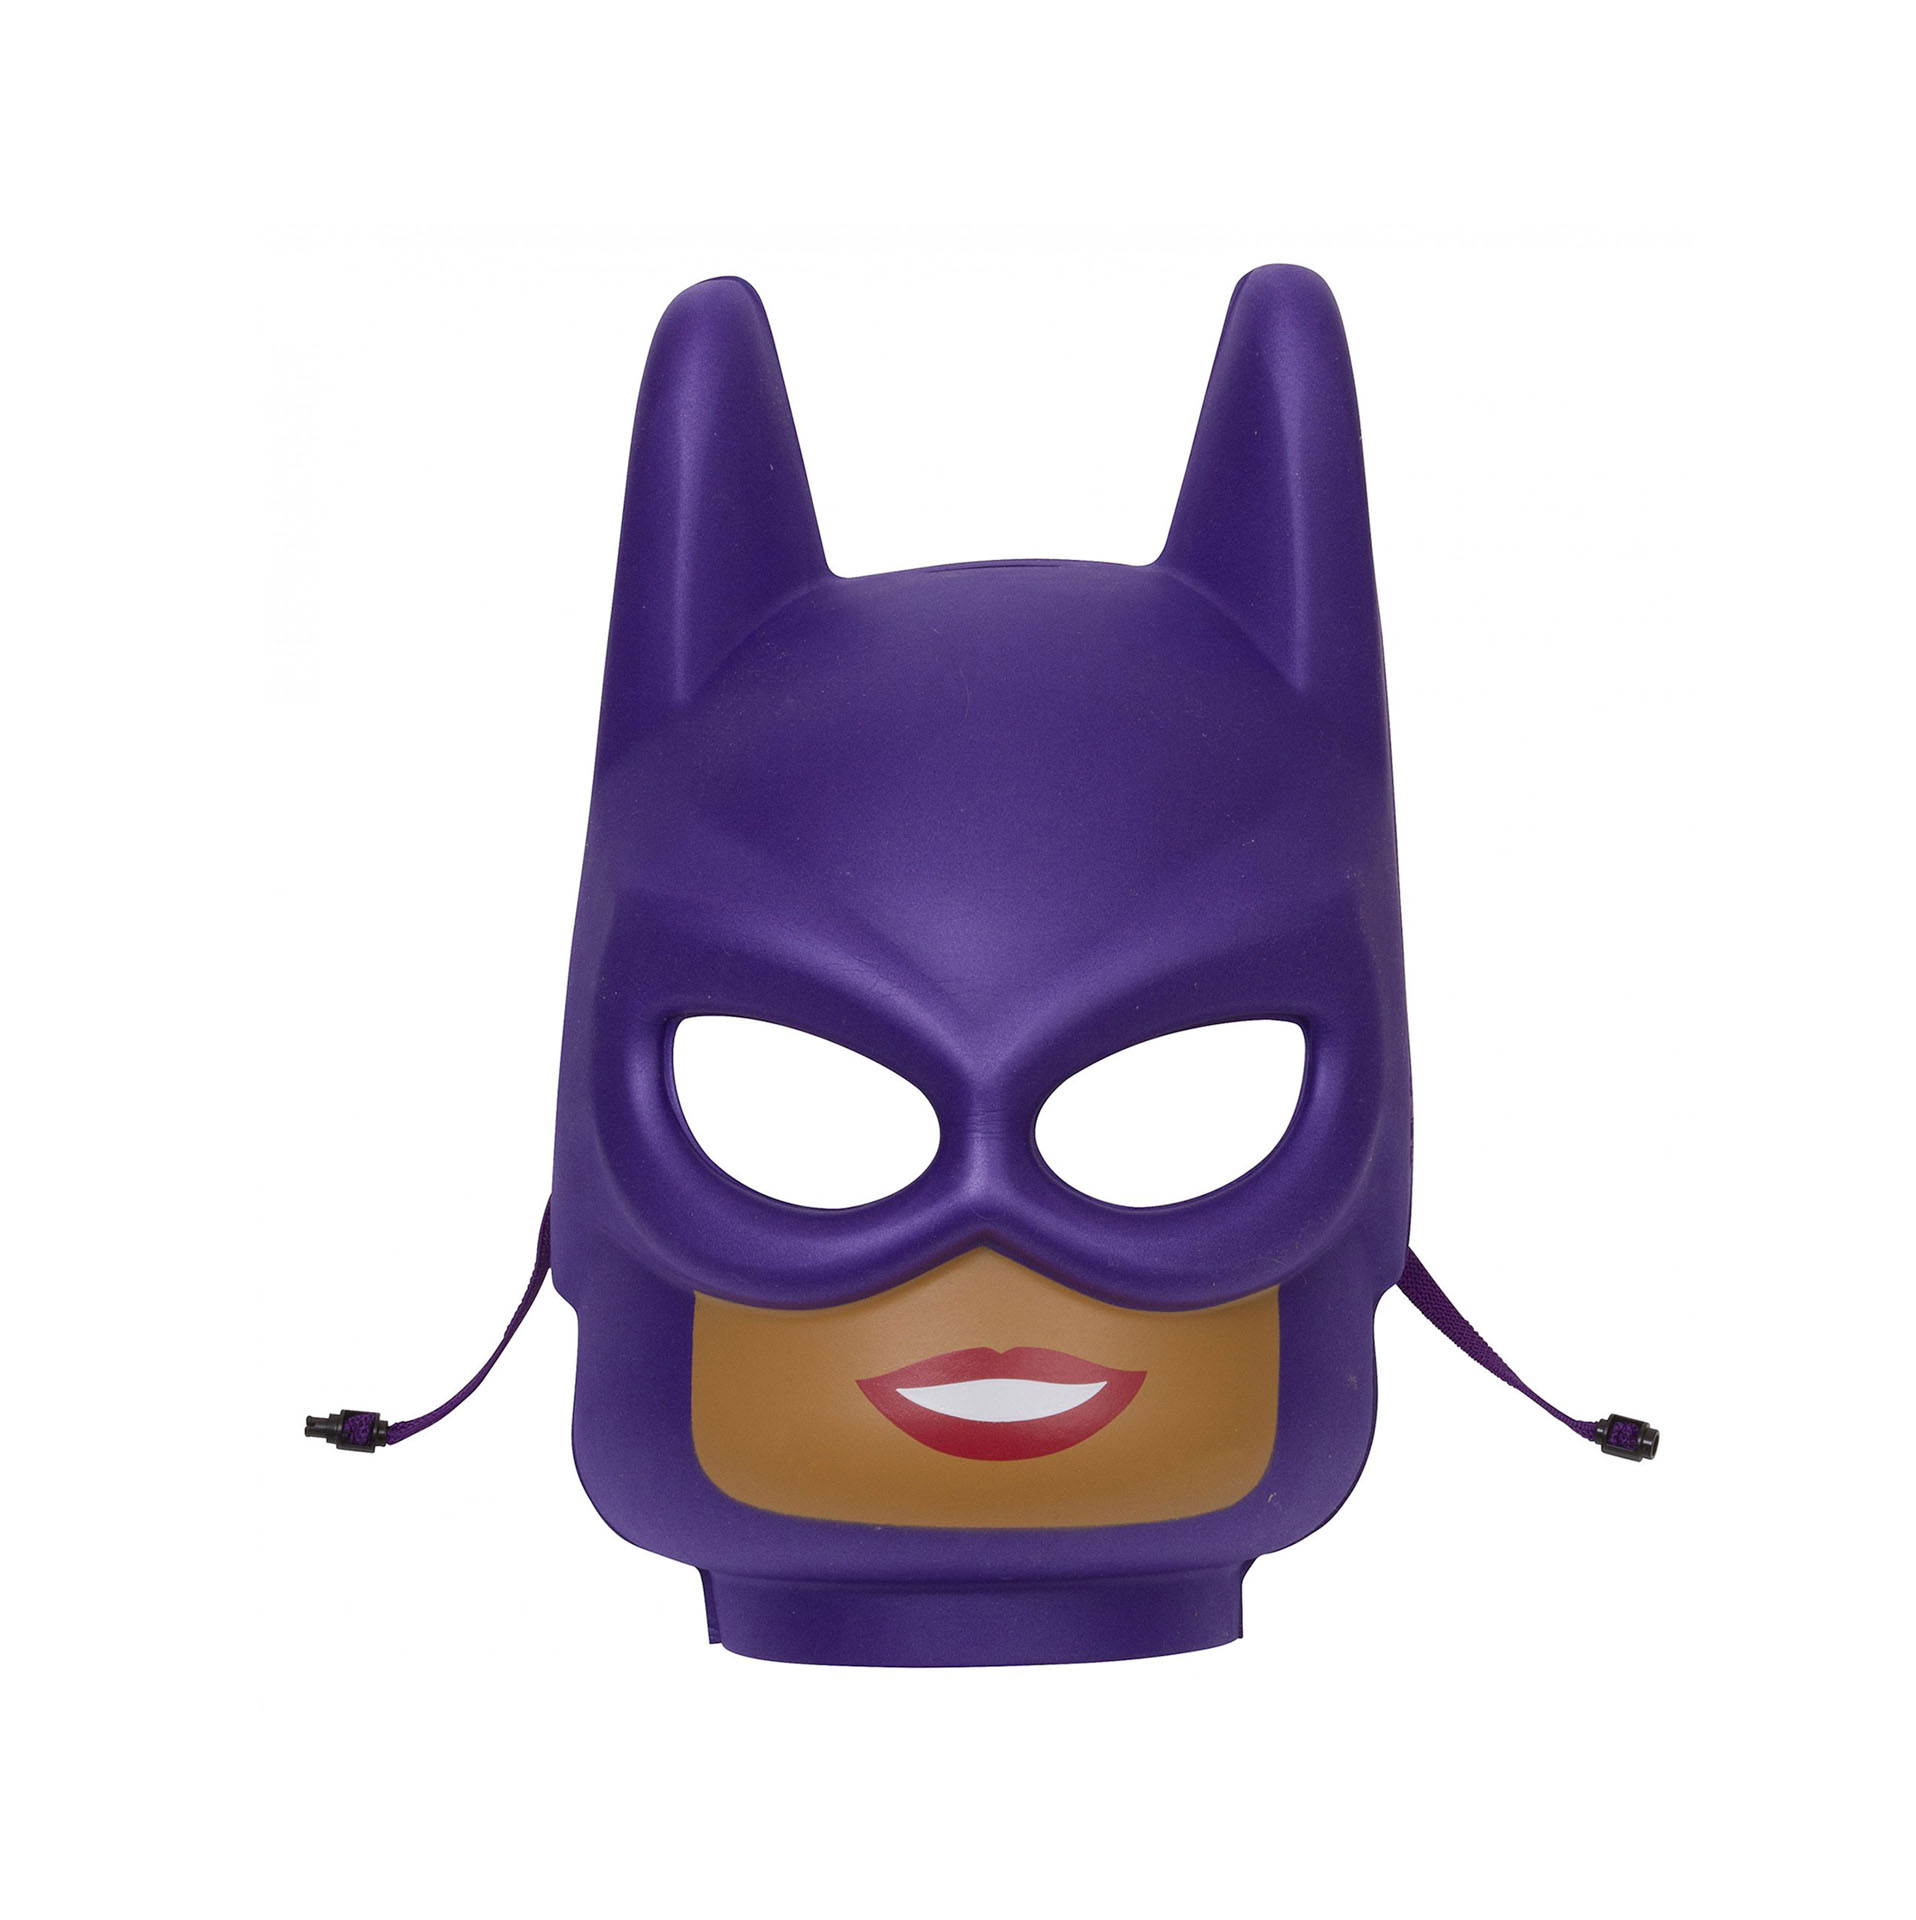 LEGO Batgirl Mask 853645 853645, , large